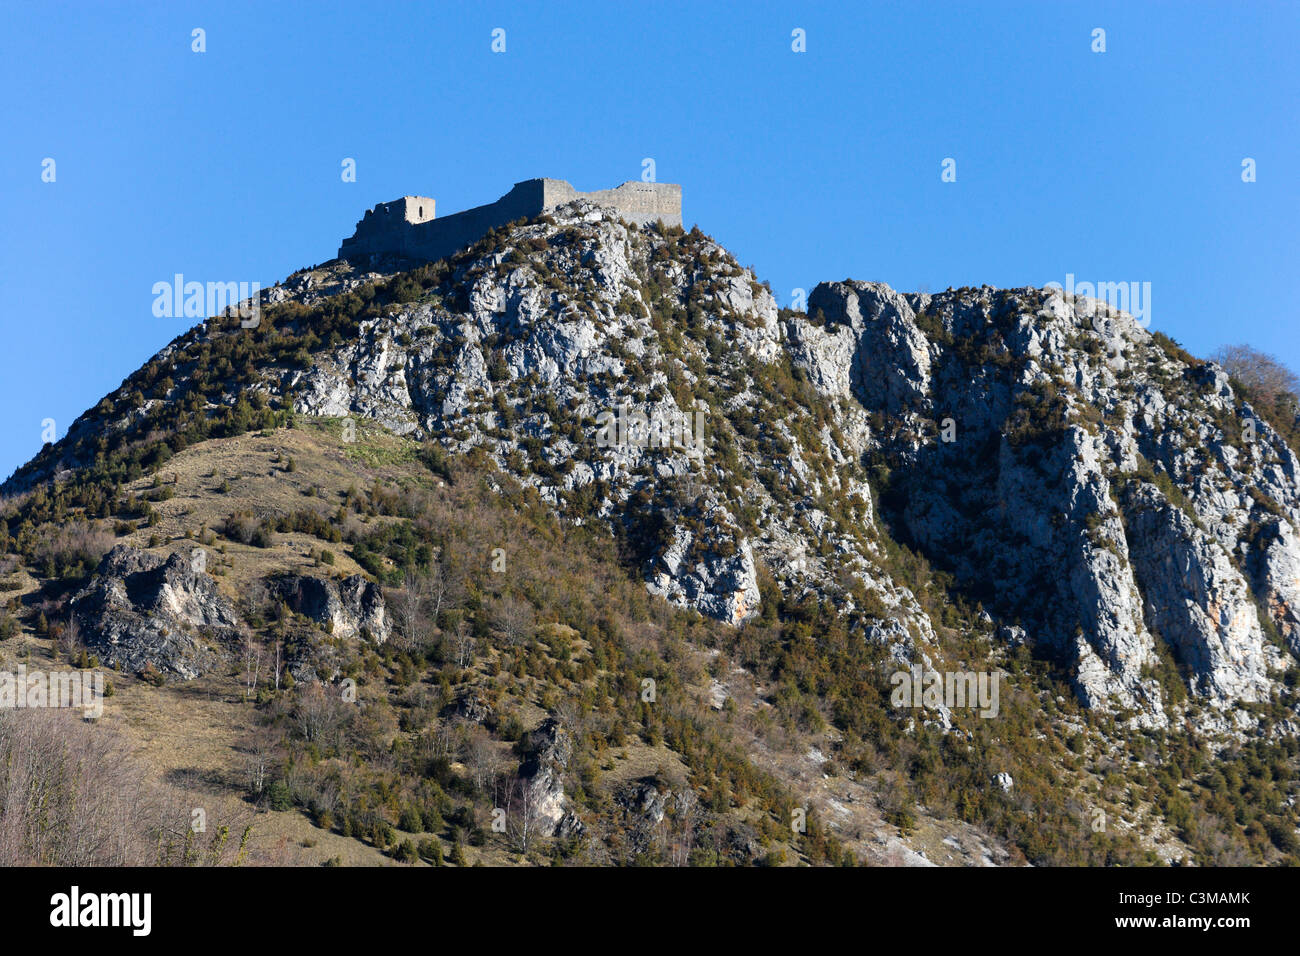 La forteresse perchée de Montségur, un ancien fief Cathare, Midi Pyrénées, France Banque D'Images